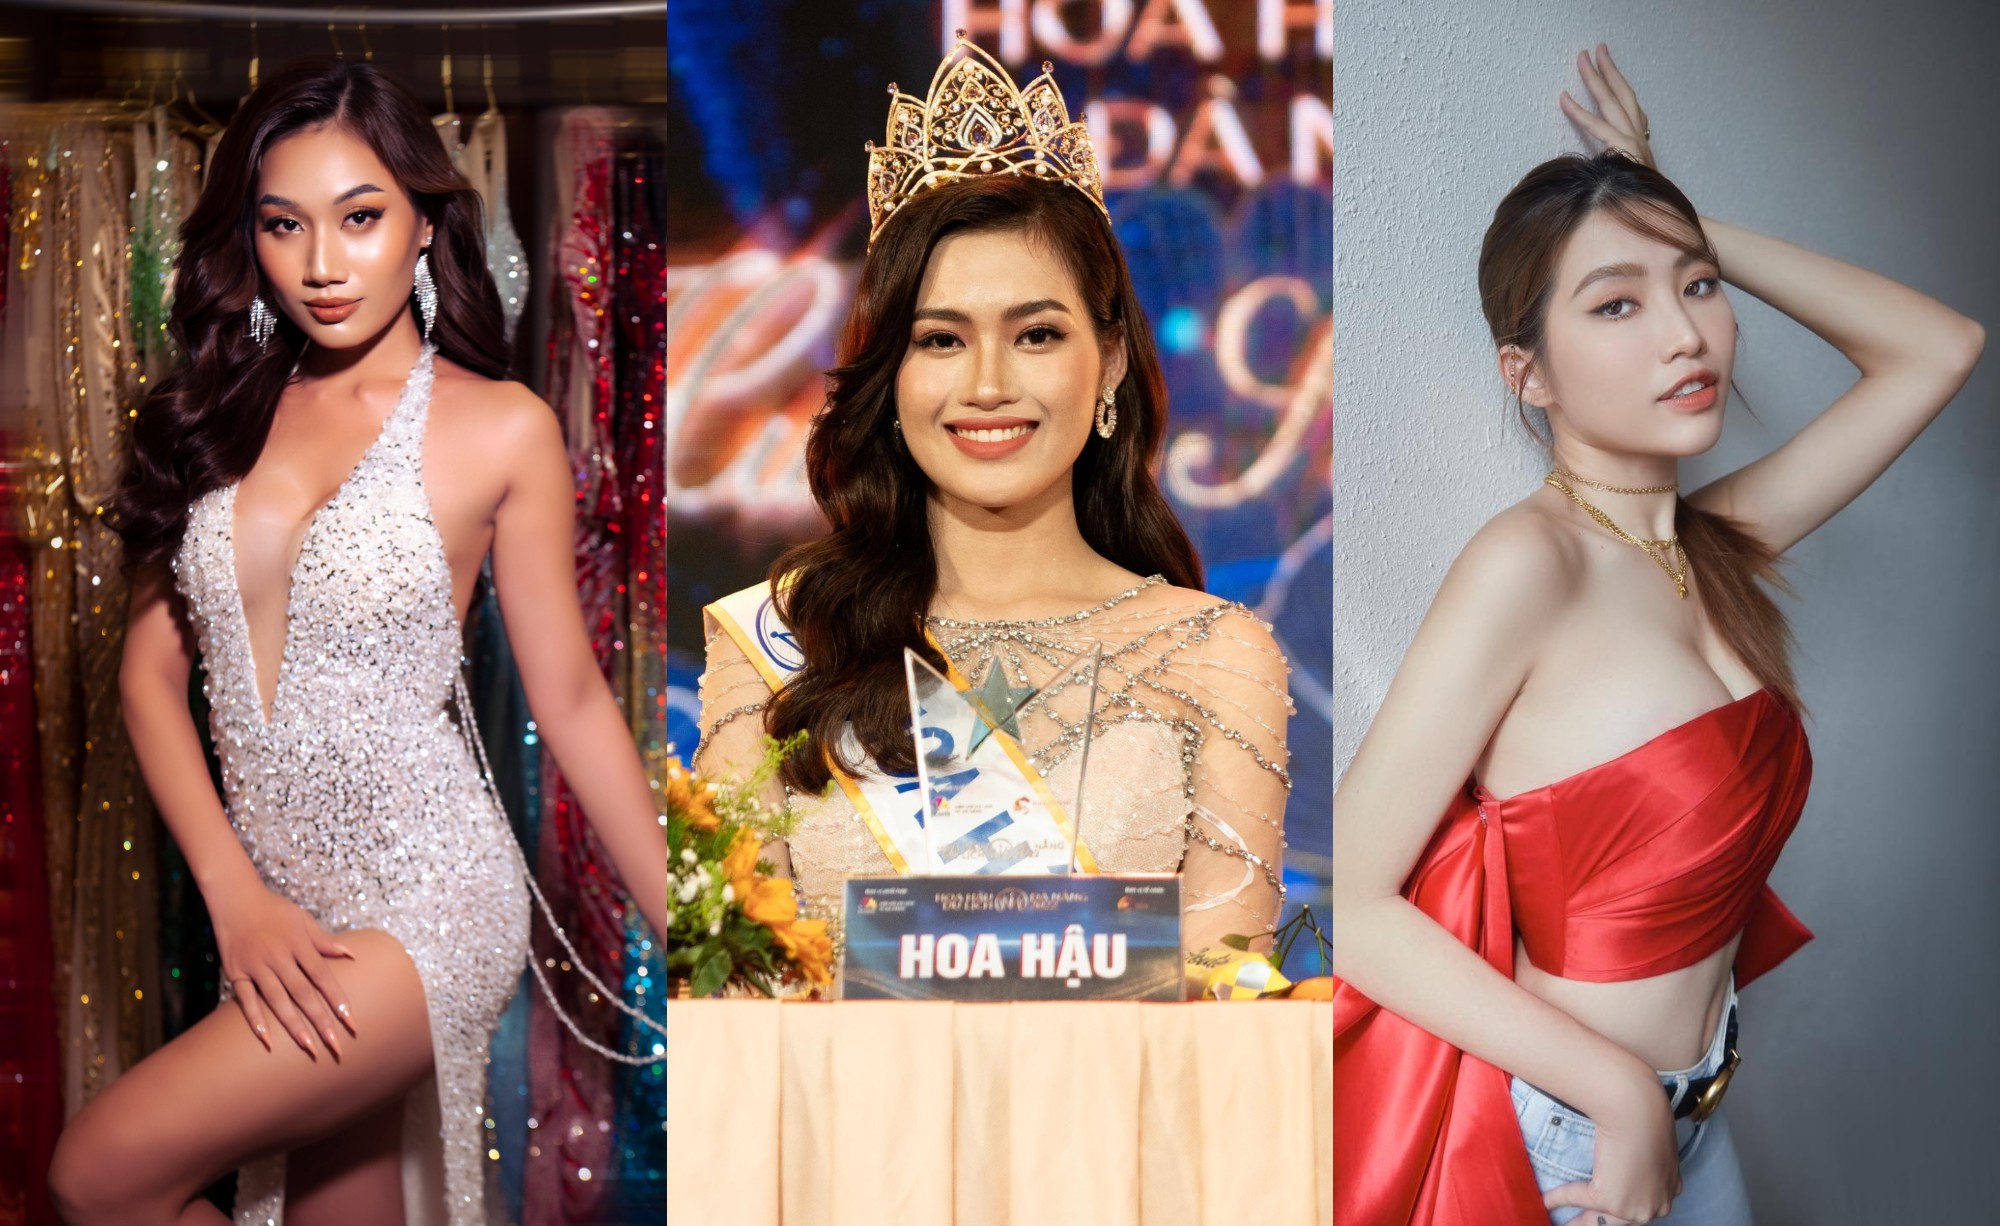 Để trở thành hoa hậu, người đẹp Miss Grand Vietnam 2022 đã phải trải qua bao khó khăn và cố gắng. Hãy đến và gặp gỡ với các thí sinh xinh đẹp, đầy năng lượng và tâm huyết, và chứng kiến sự cạnh tranh và hào nhoáng trong cuộc thi. Bạn sẽ được đắm chìm trong vẻ đẹp của những cô gái tài năng và nổi bật nhất.